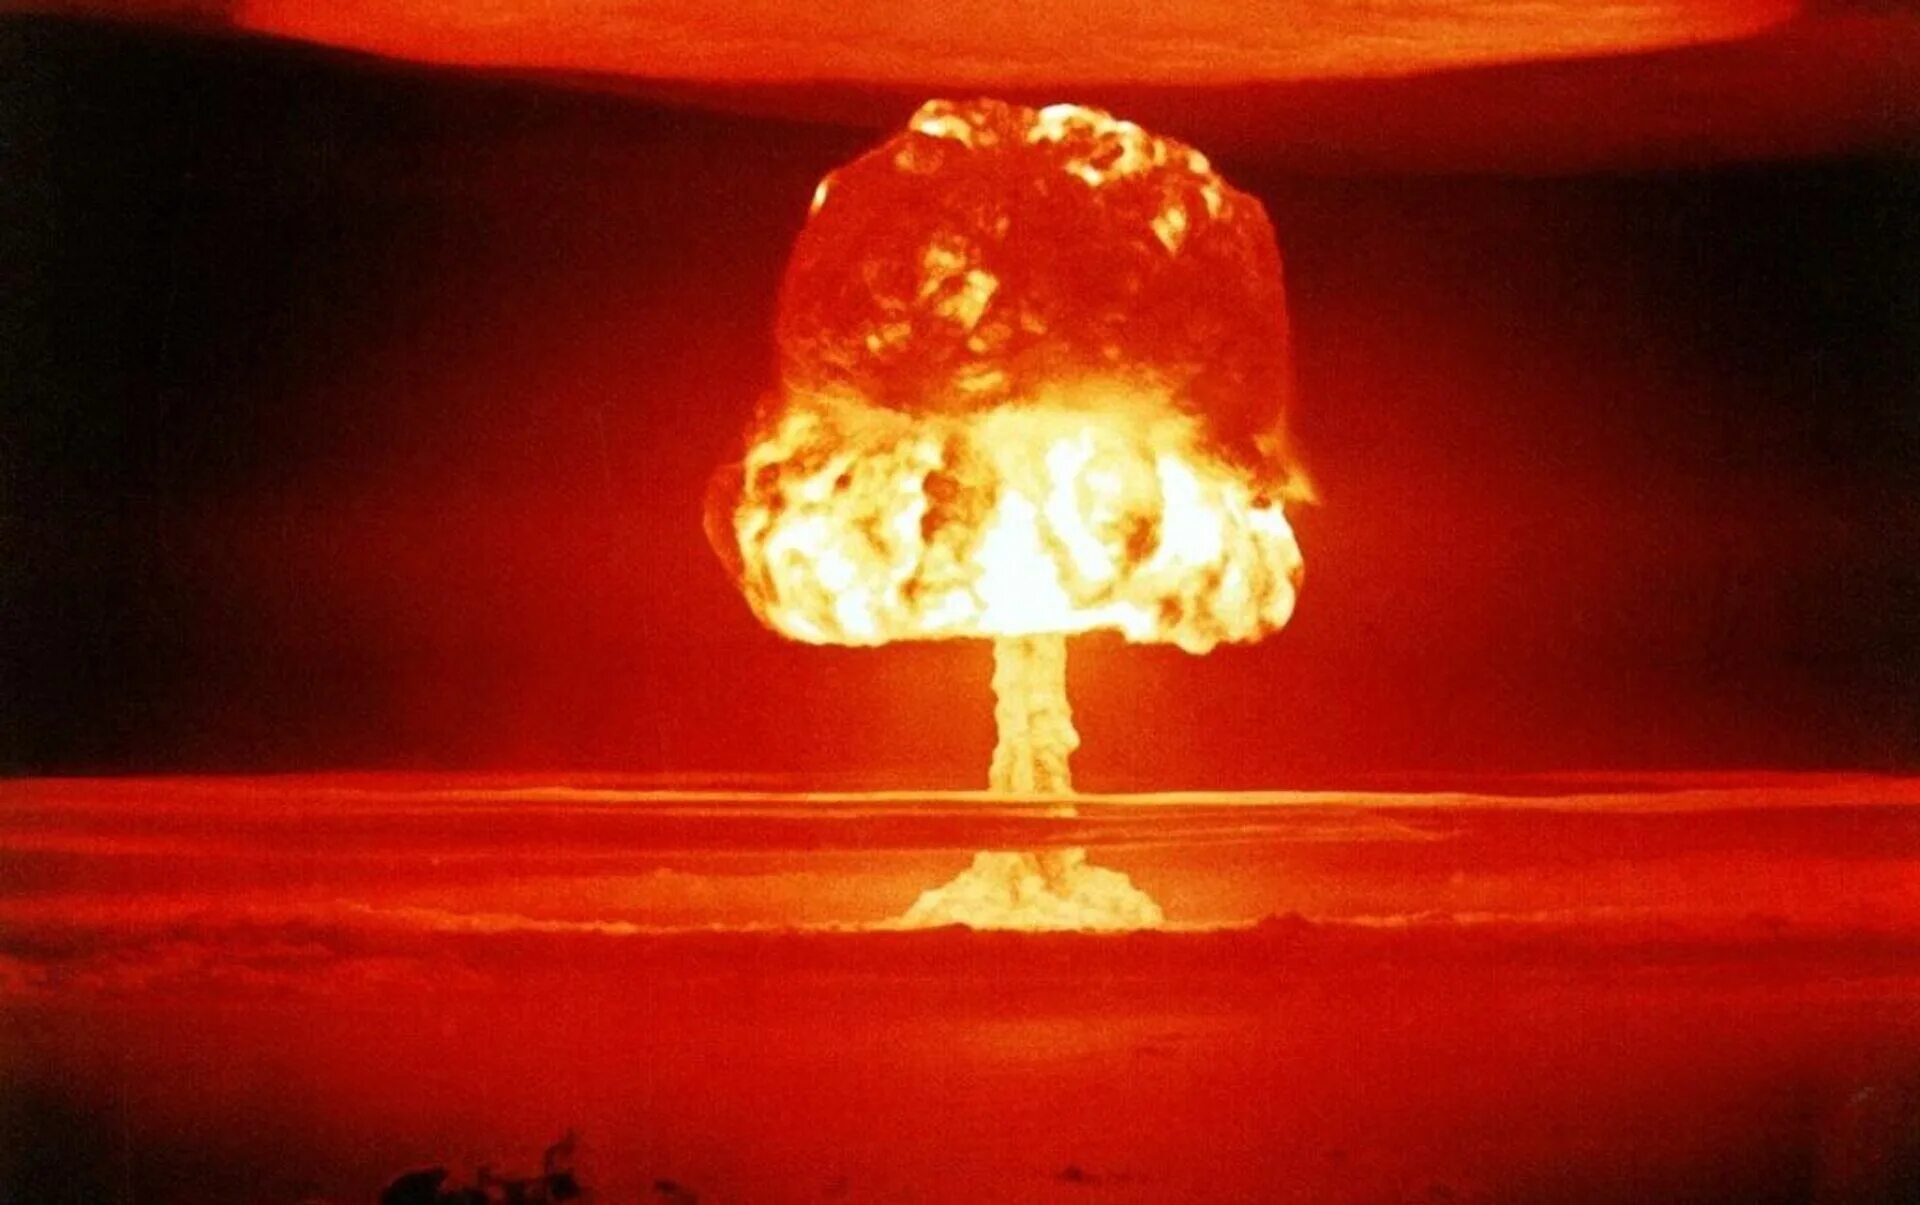 Вспышка ядерного взрыва. Ядерный взрыв. Ядерное оружие массового поражения. Атомный взрыв. Огненный шар ядерного взрыва.